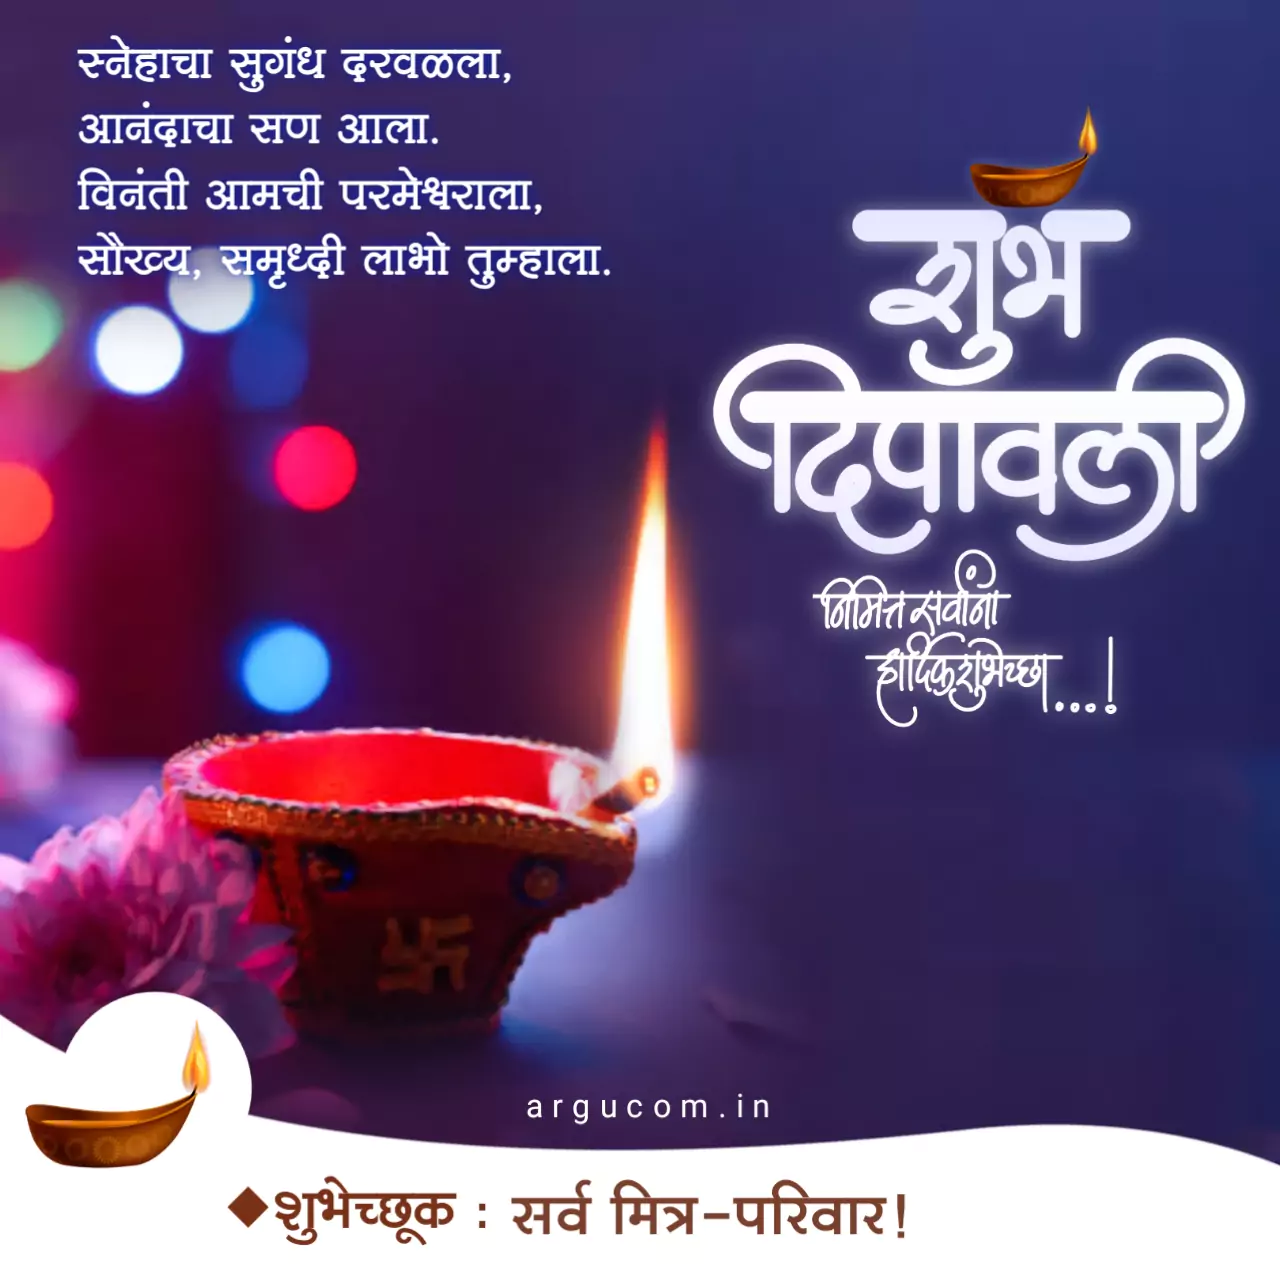 Happy diwali wishes in marathi